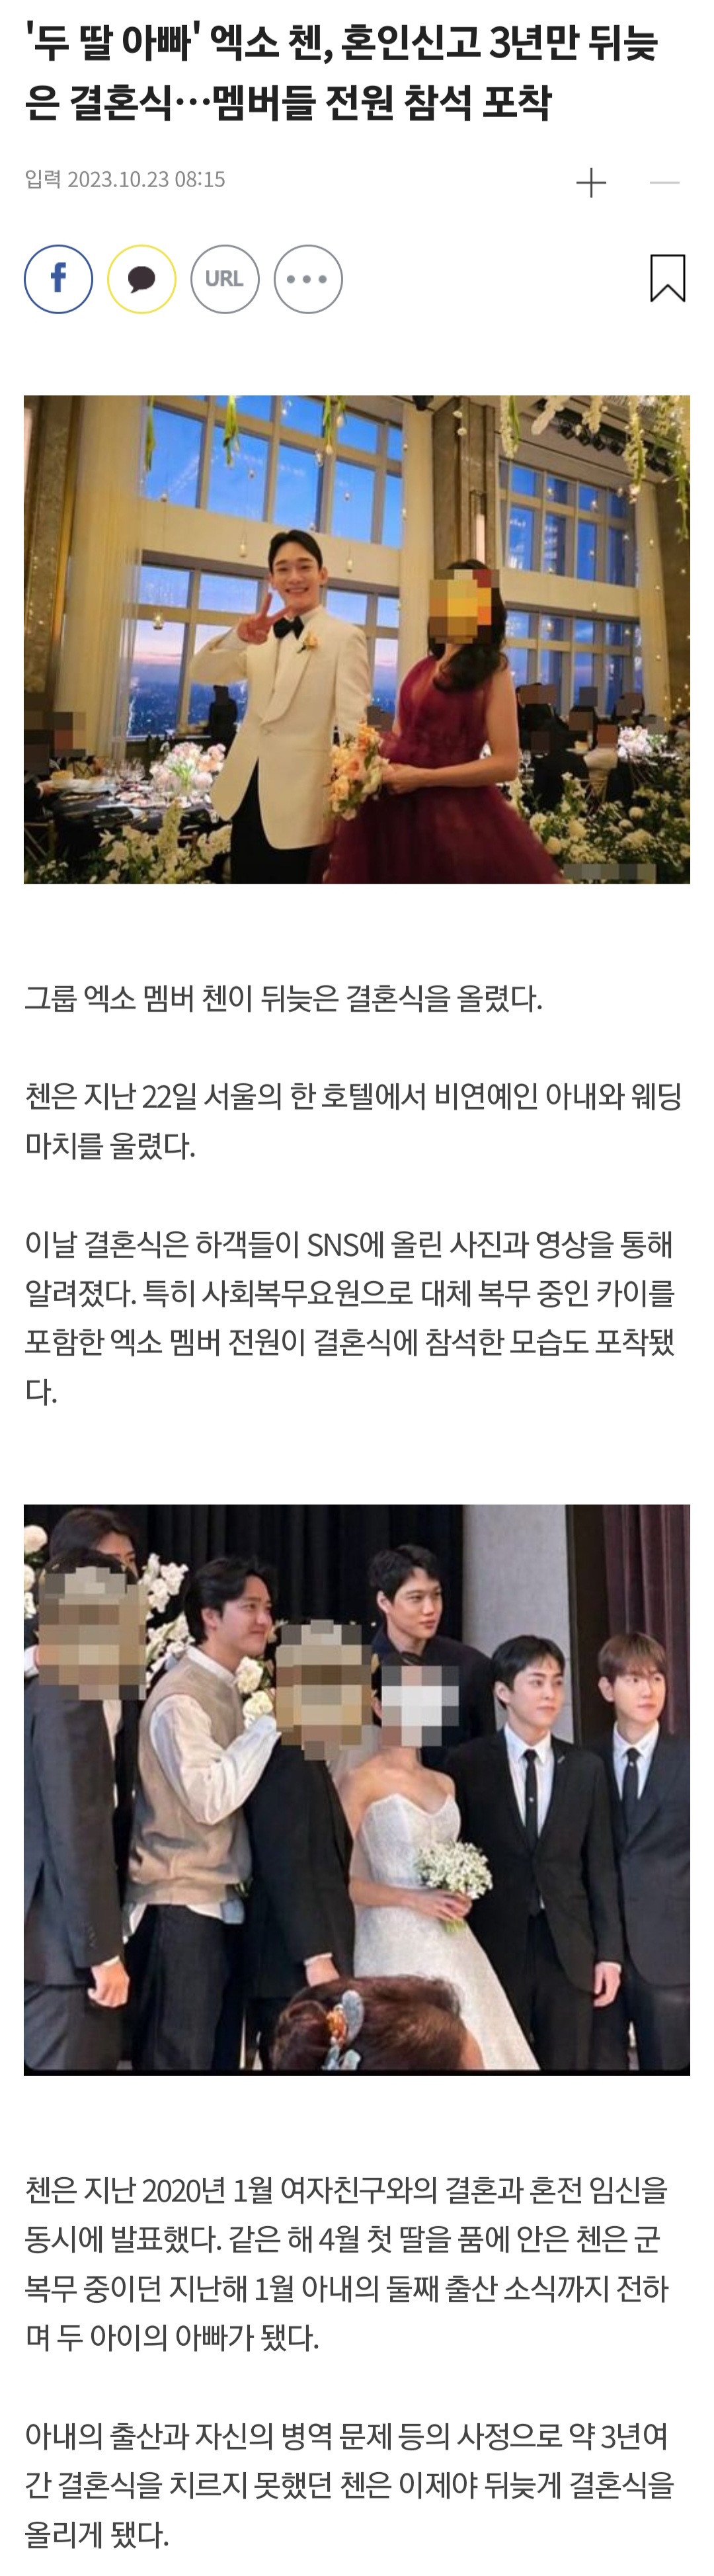 [정보/소식] '두 딸 아빠' 엑소 첸, 혼인신고 3년만 뒤늦은 결혼식…멤버들 전원 참석 포착 | 인스티즈